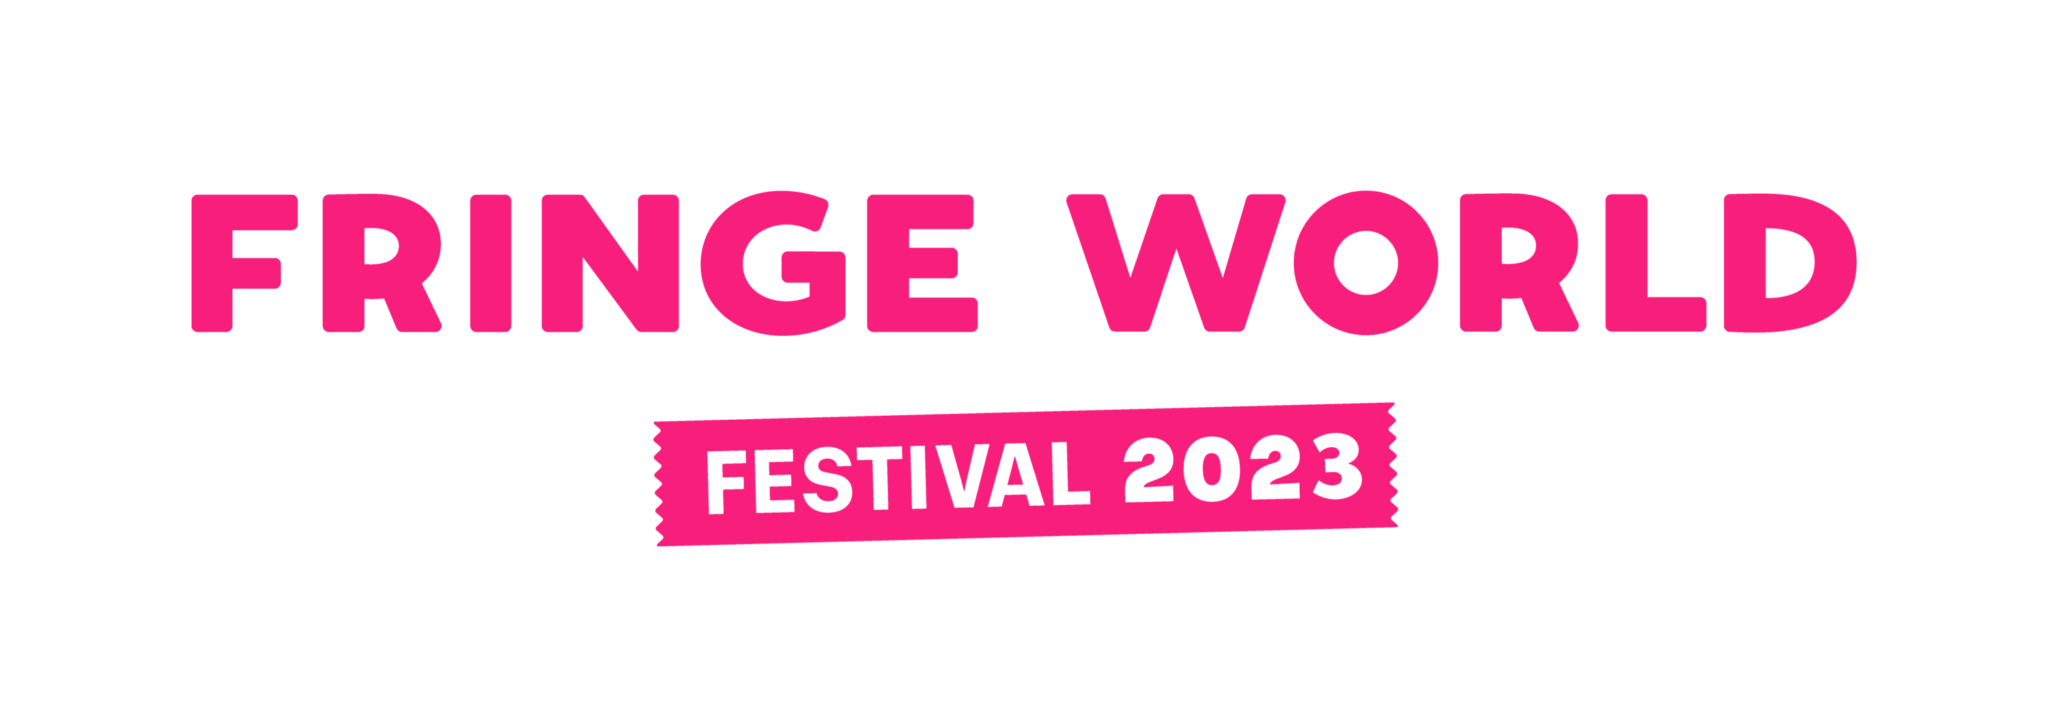 Melbourne Fringe Festival Awards 2022 Melbourne Fringe